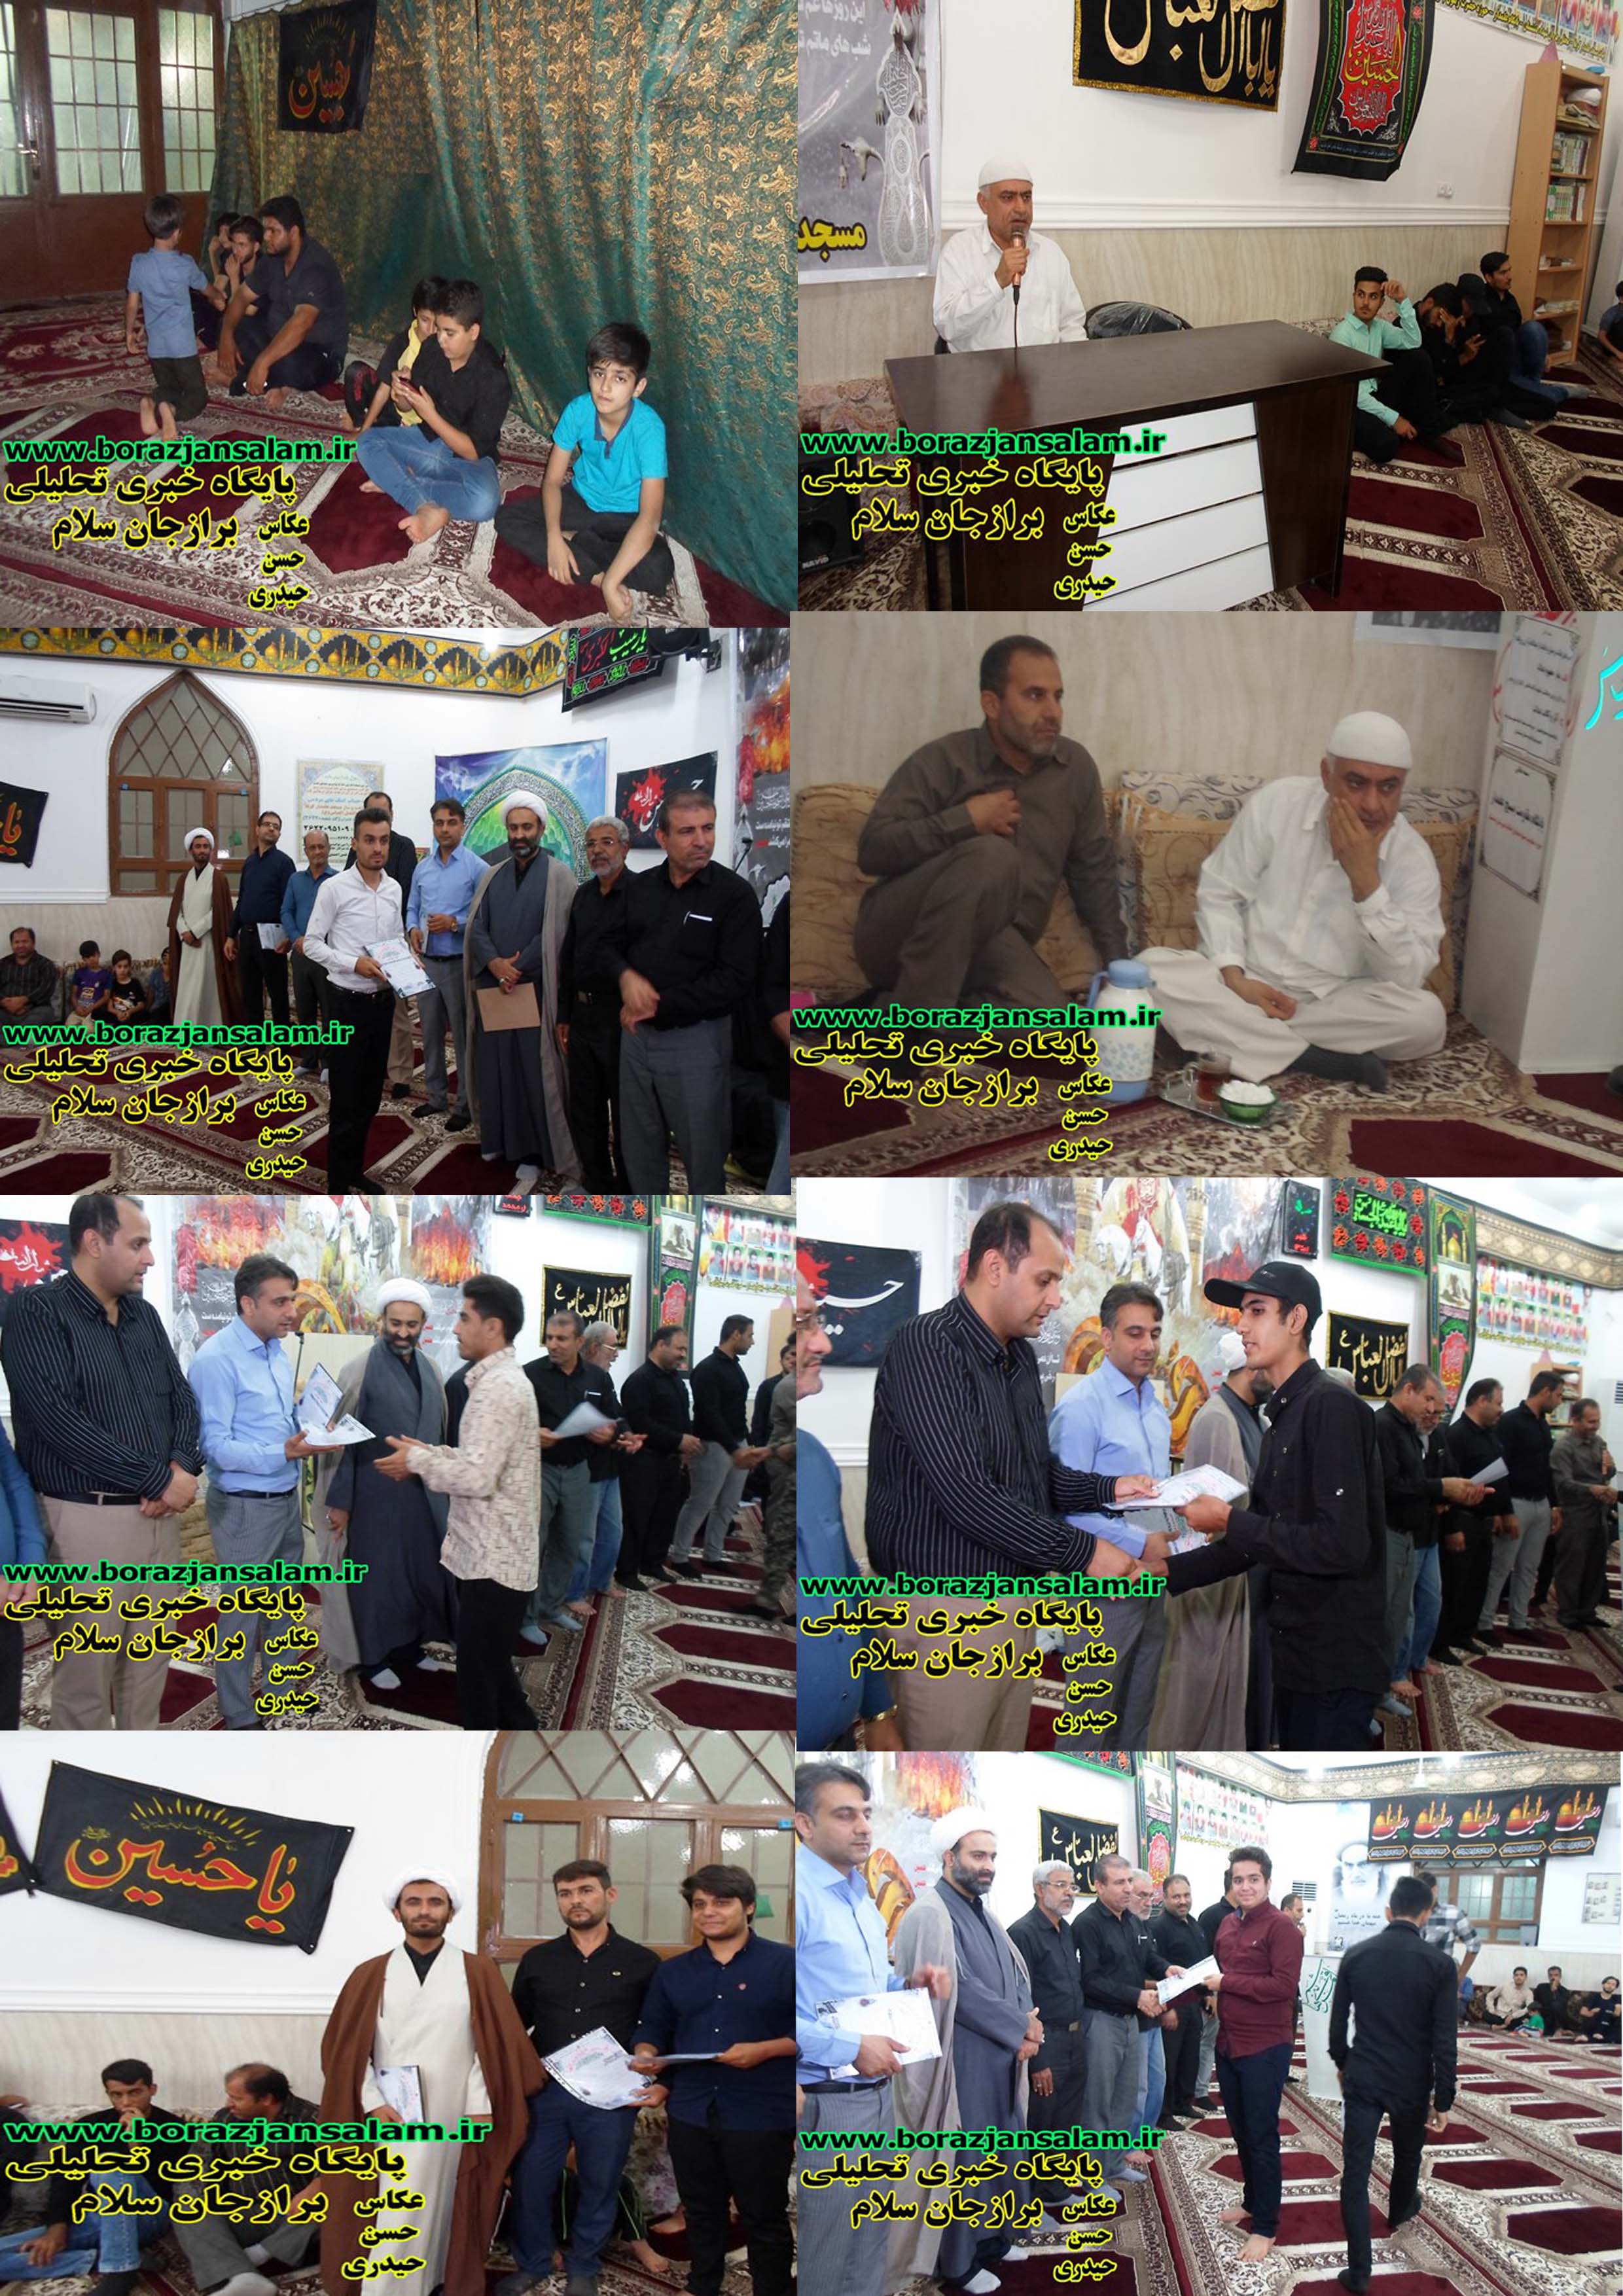 تصاویر و فیلم شروه خوانی و تقدیر از خادمین محرم در مسجد علمدار برازجان